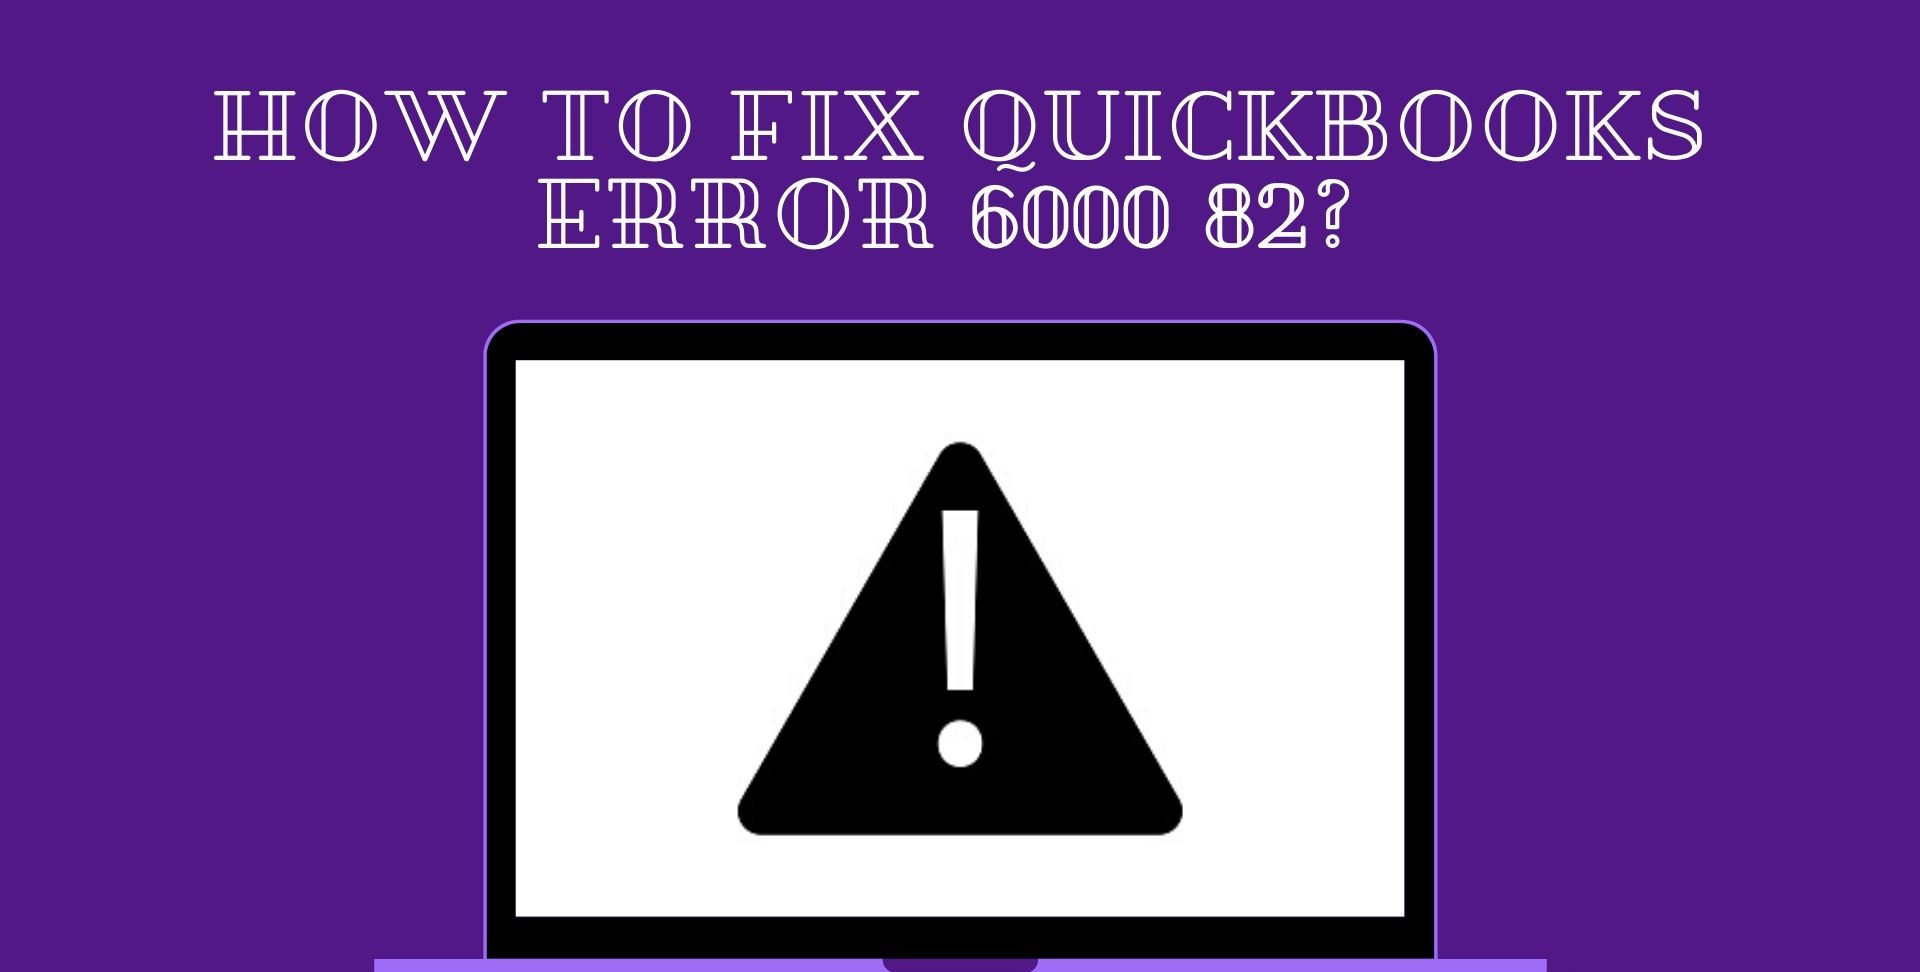 QuickBooks-Error-6000-82.jpg